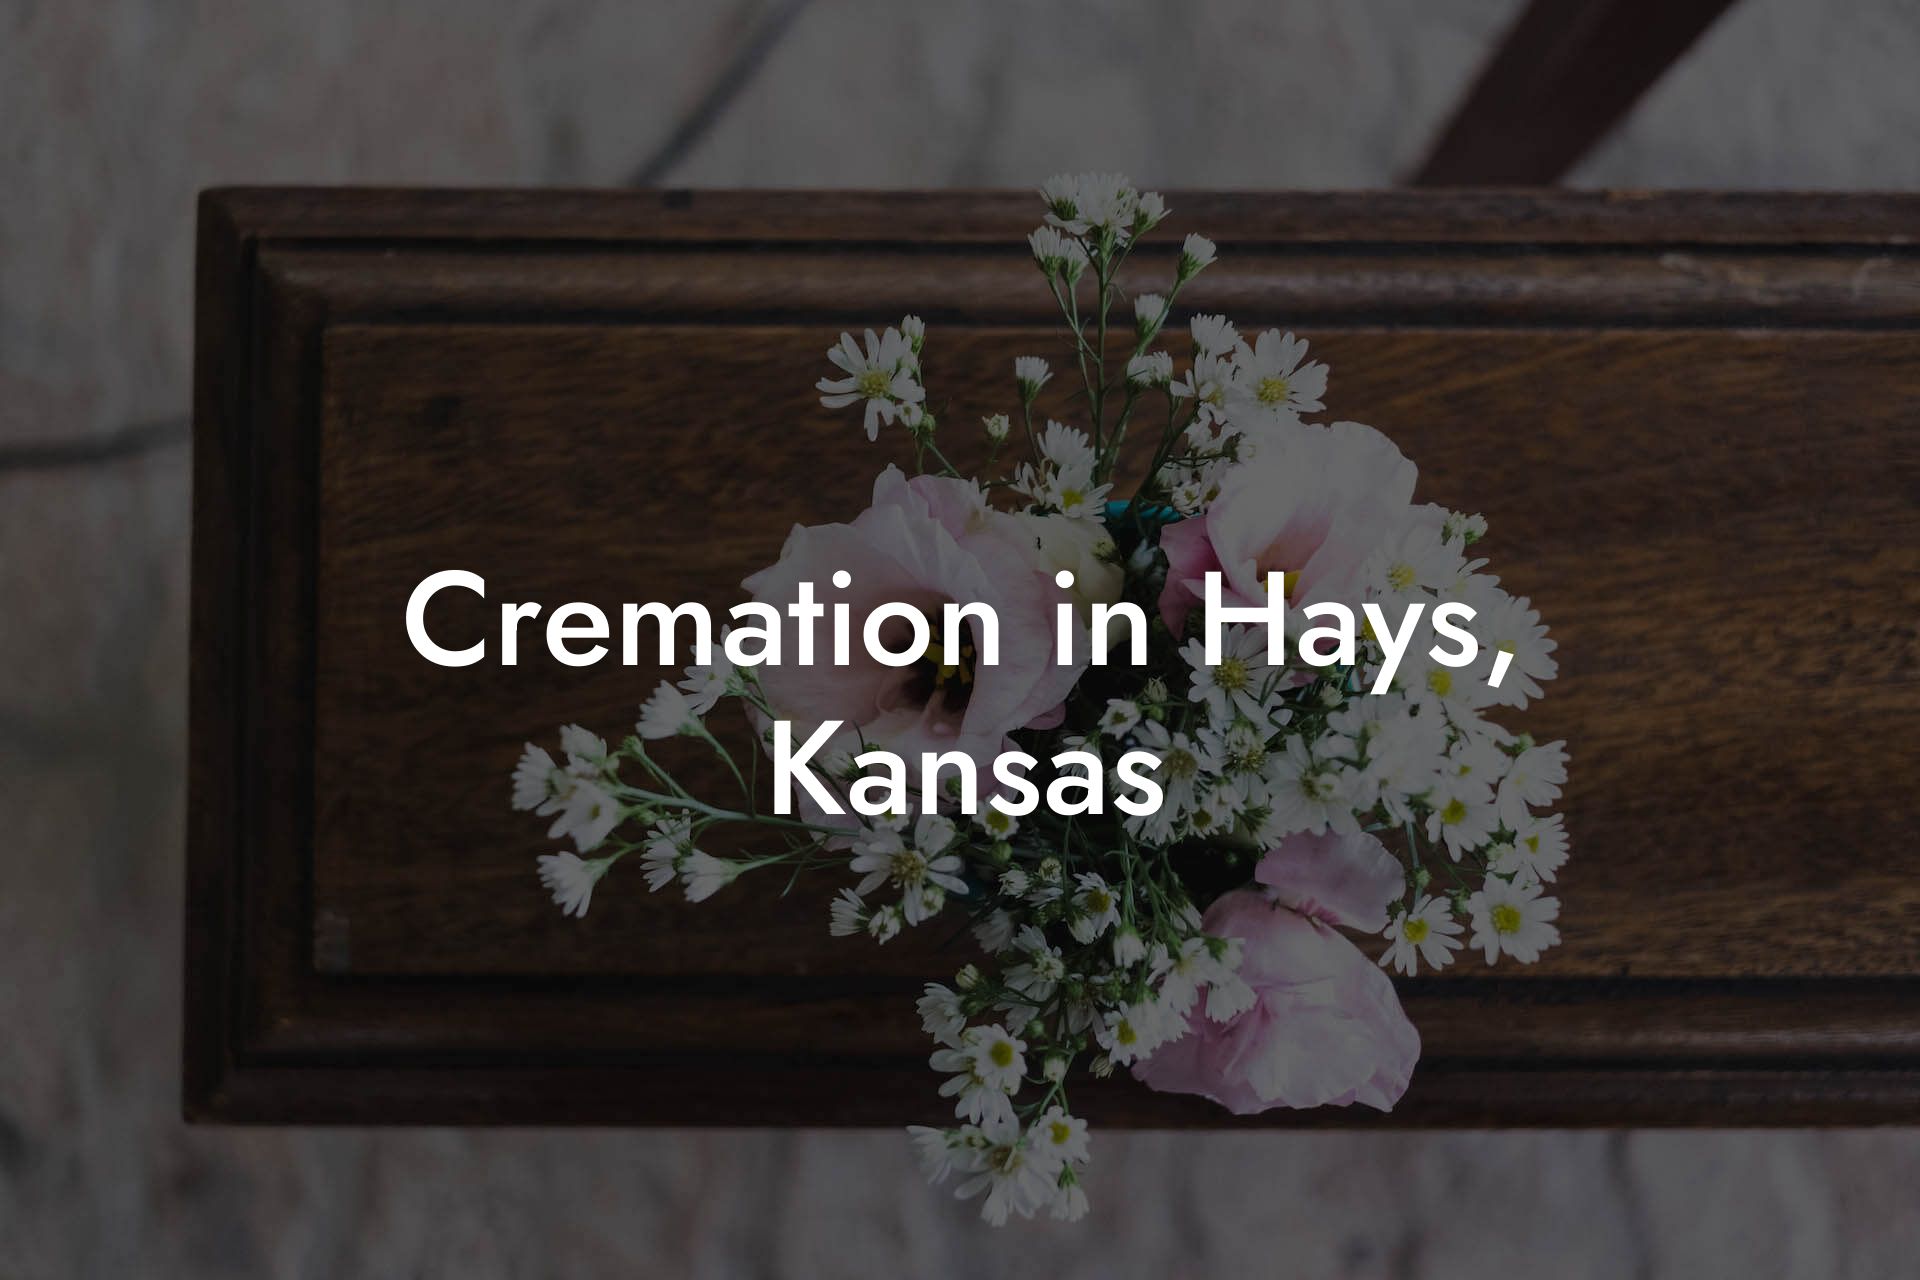 Cremation in Hays, Kansas